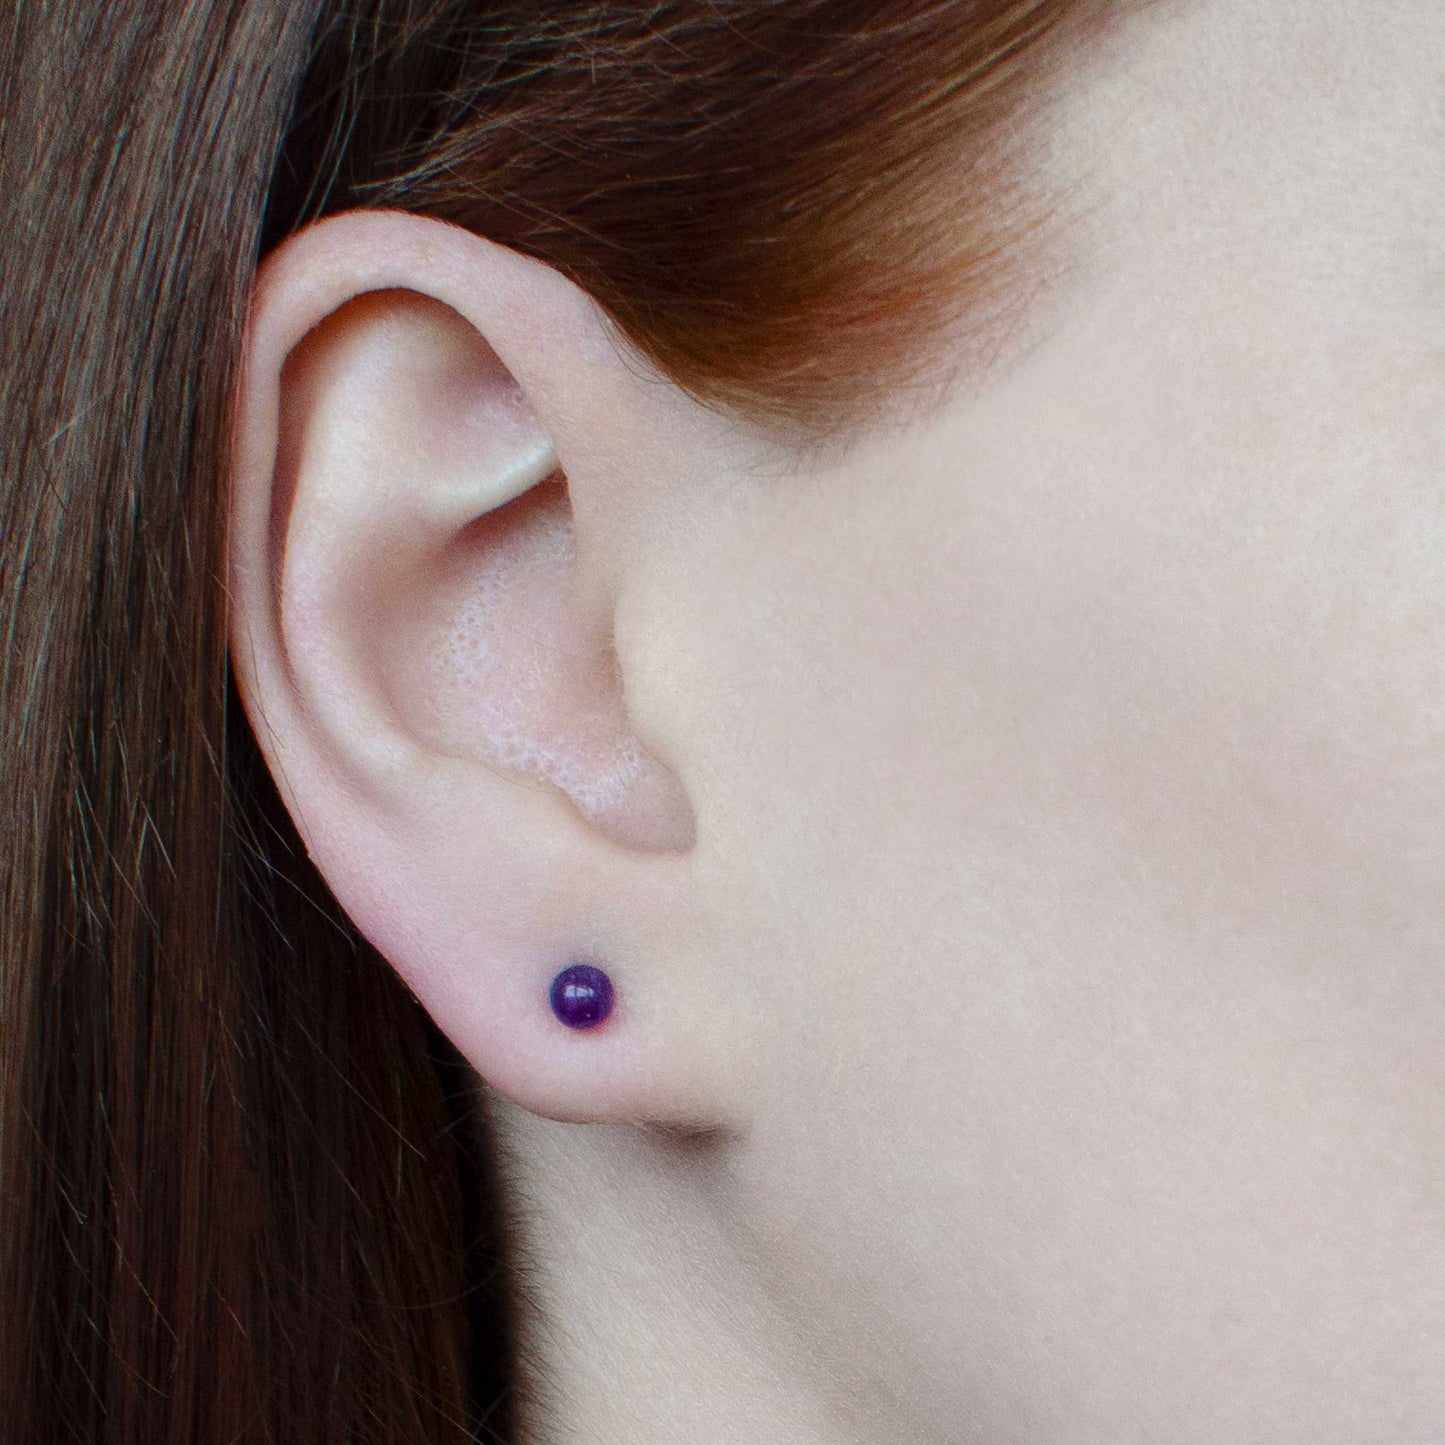 Woman wearing small Amethyst stud earring in earlobe